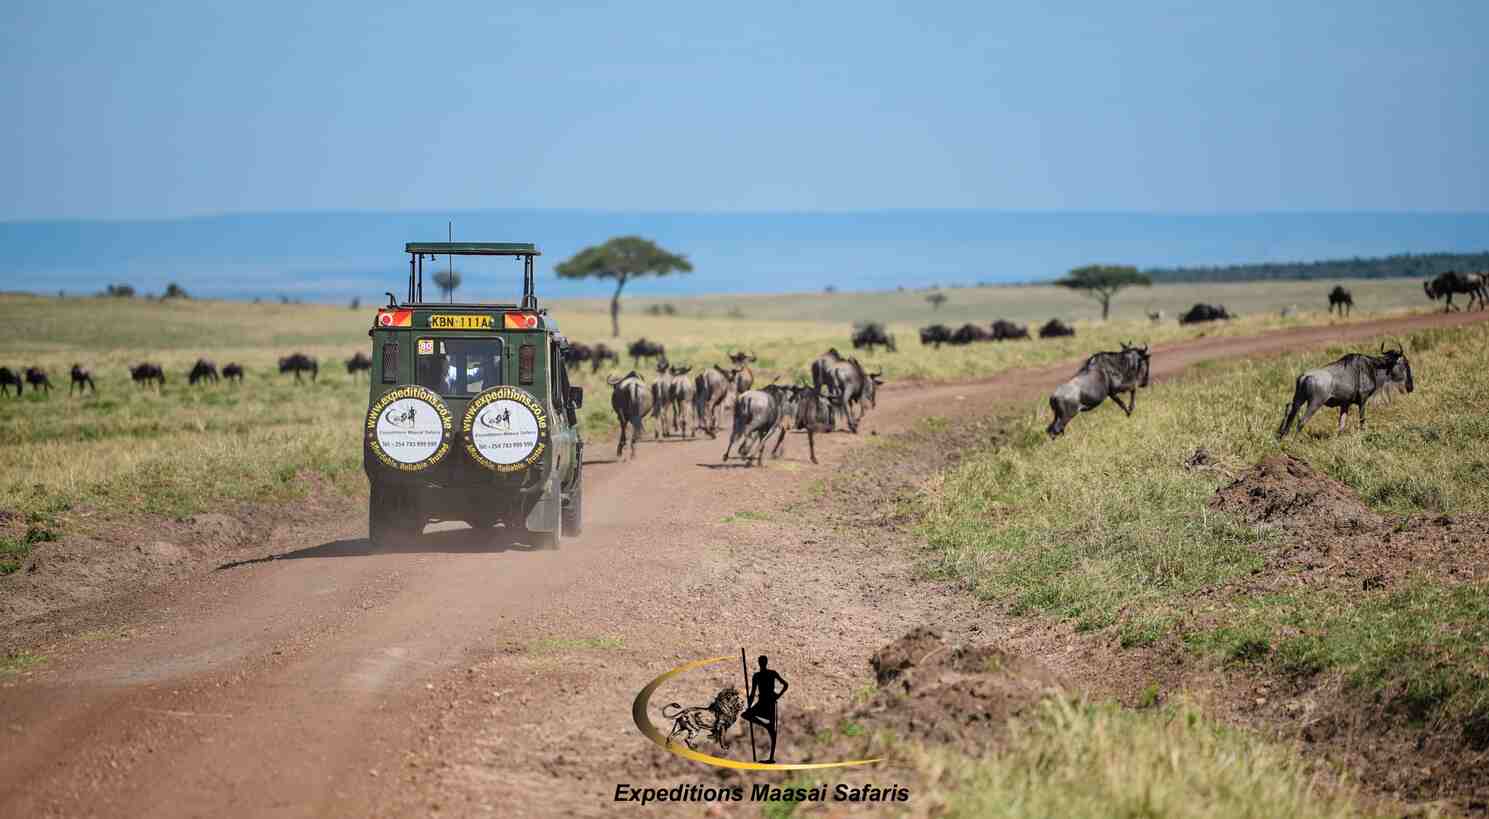 Expeditions Maasai Safaris land cruiser at the Masai Mara National Reserve in July 2022